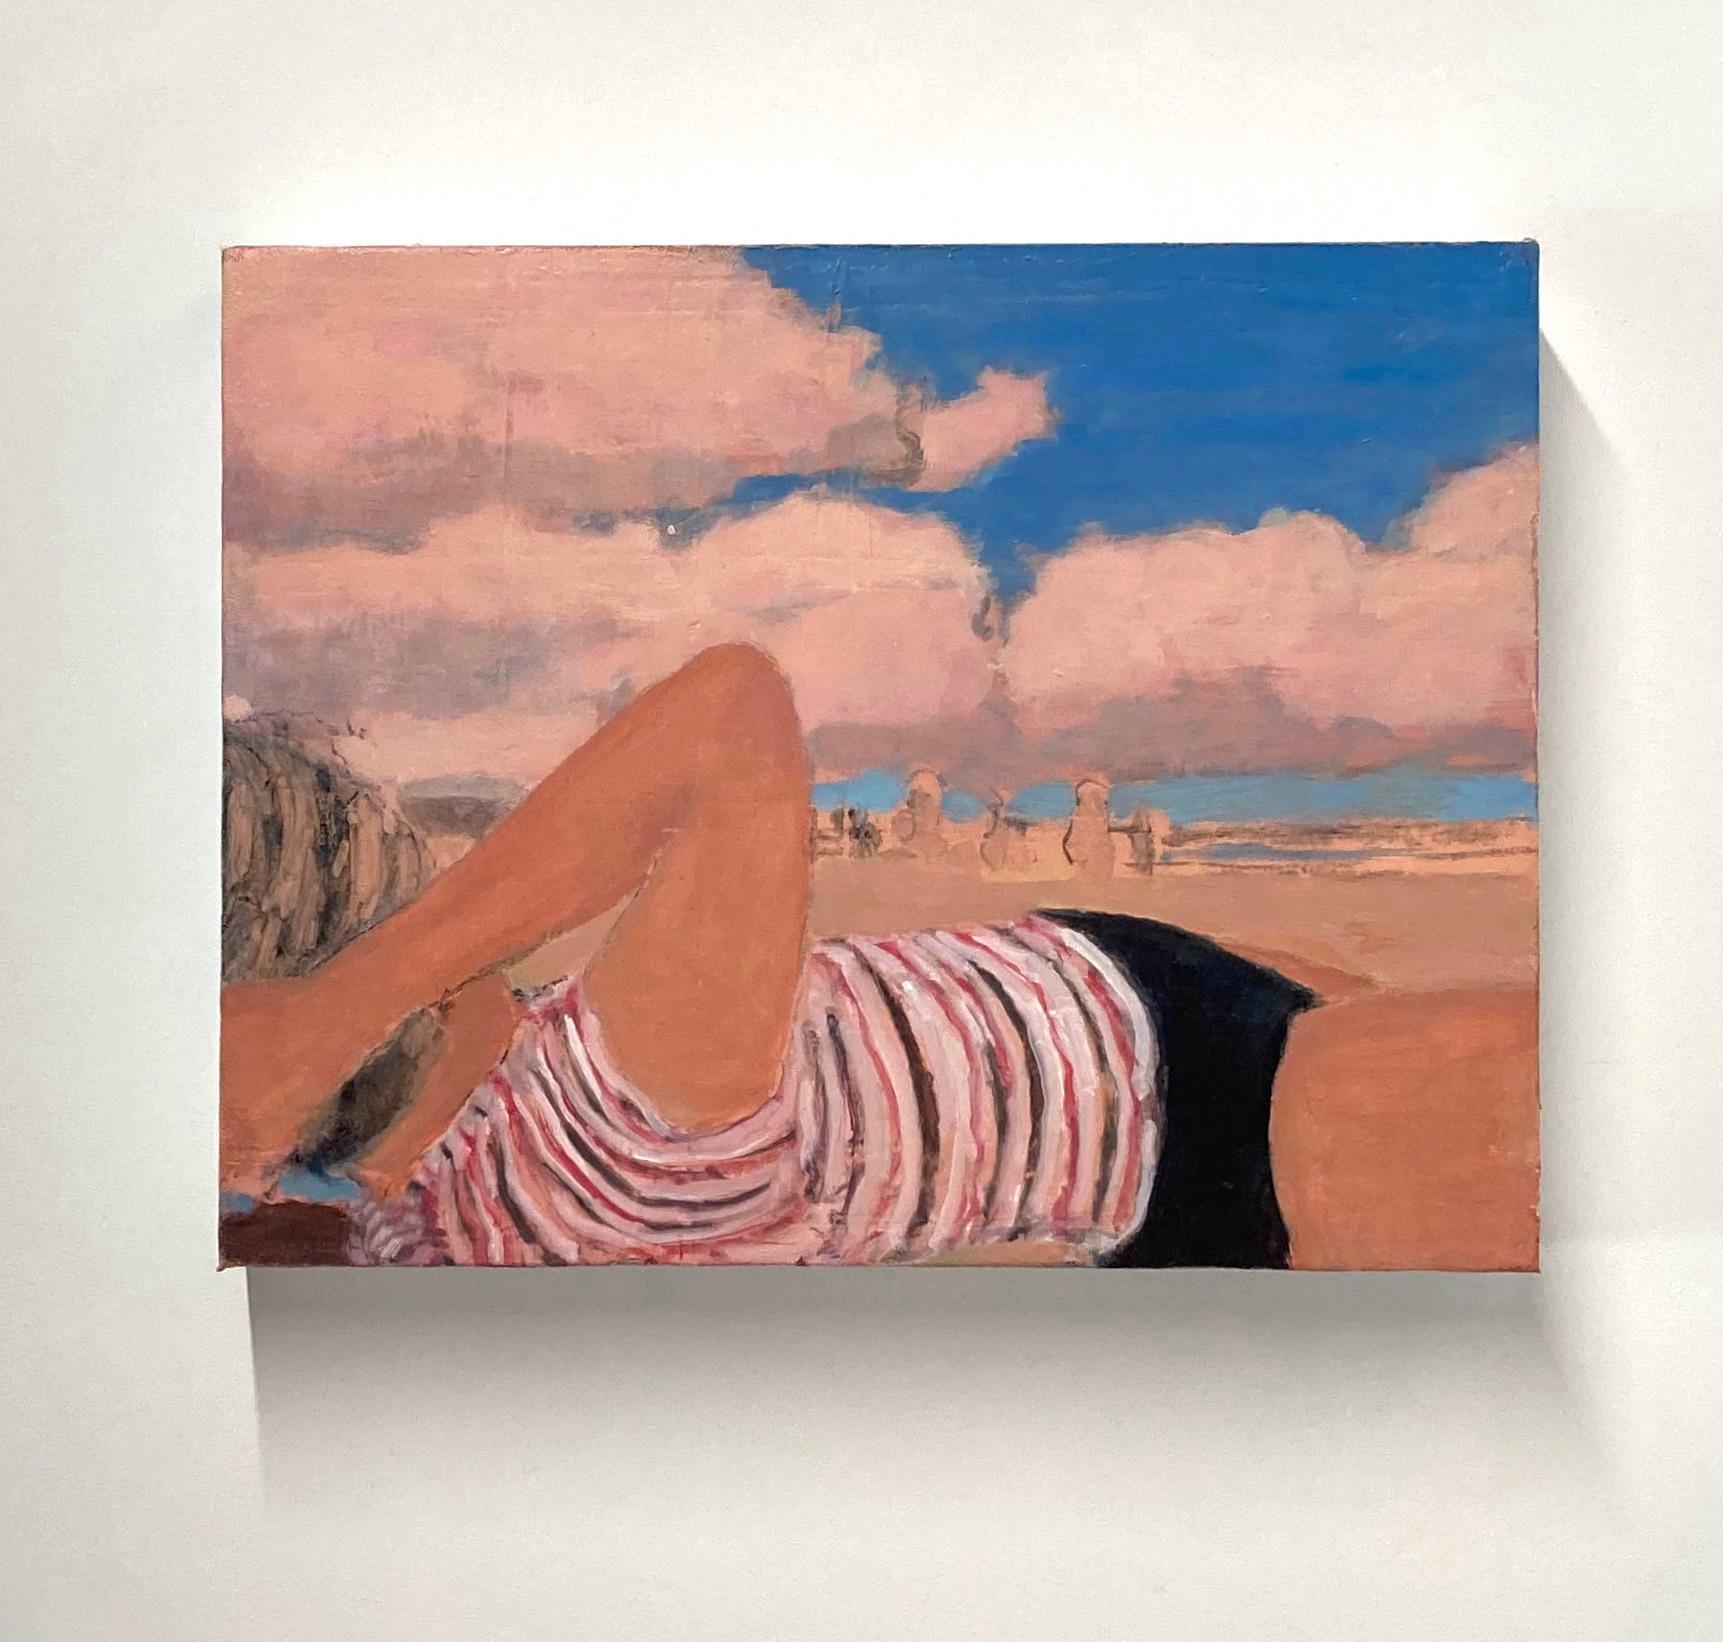 Vierundvierzigfünfzig Figur am Strand, Koralle Sand, Wolken, Blauer Himmel Sommerlandschaft – Painting von David Konigsberg